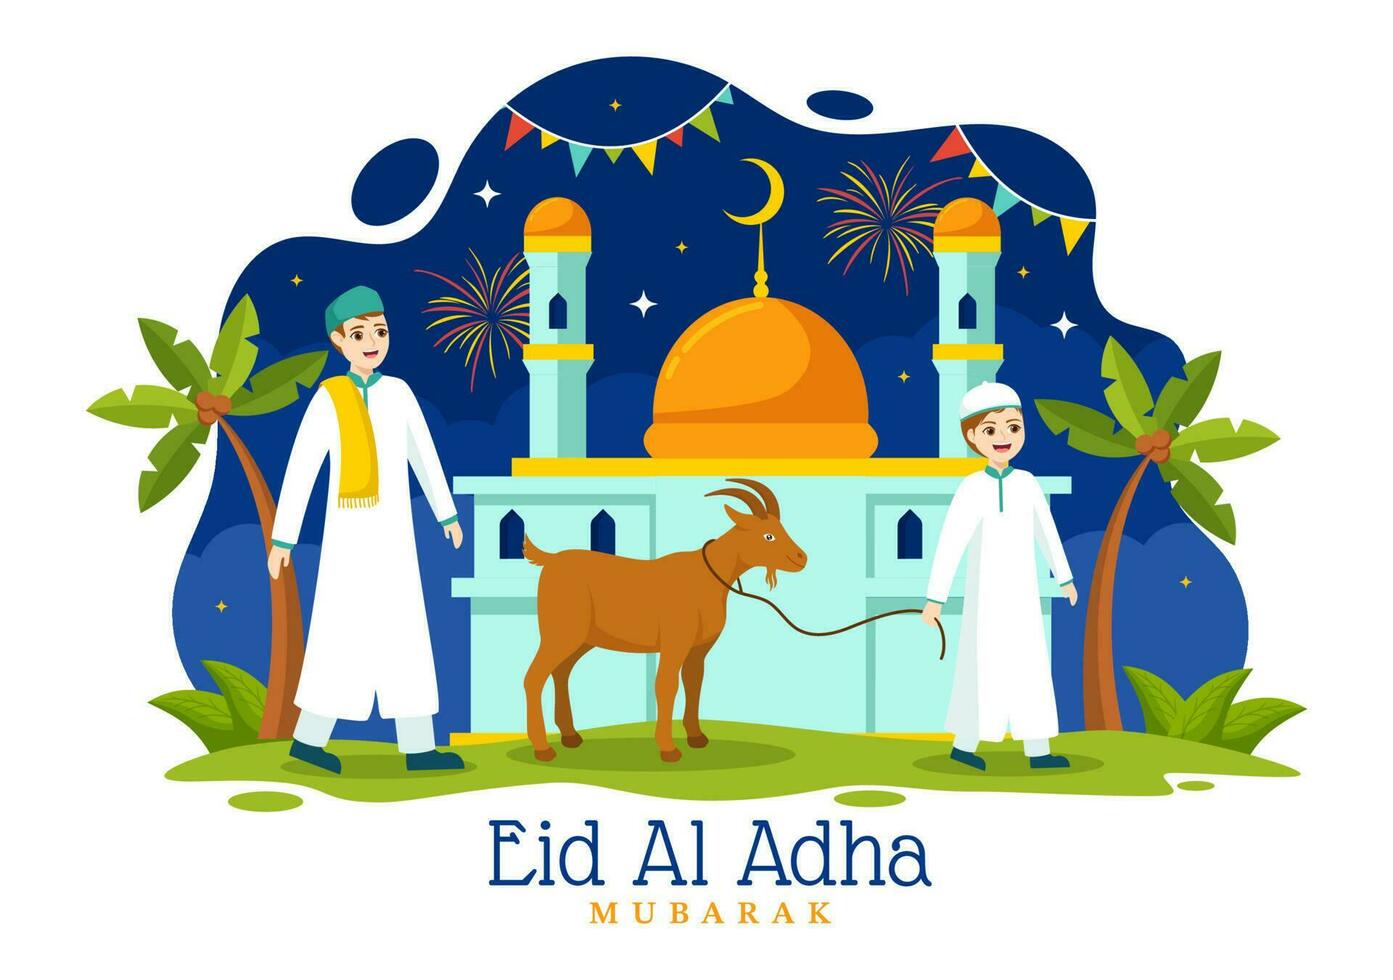 contento eid Alabama adha Mubarak vector ilustración de niños musulmanes celebracion con sacrificatorio animales cabra y vaca en dibujos animados mano dibujado plantillas